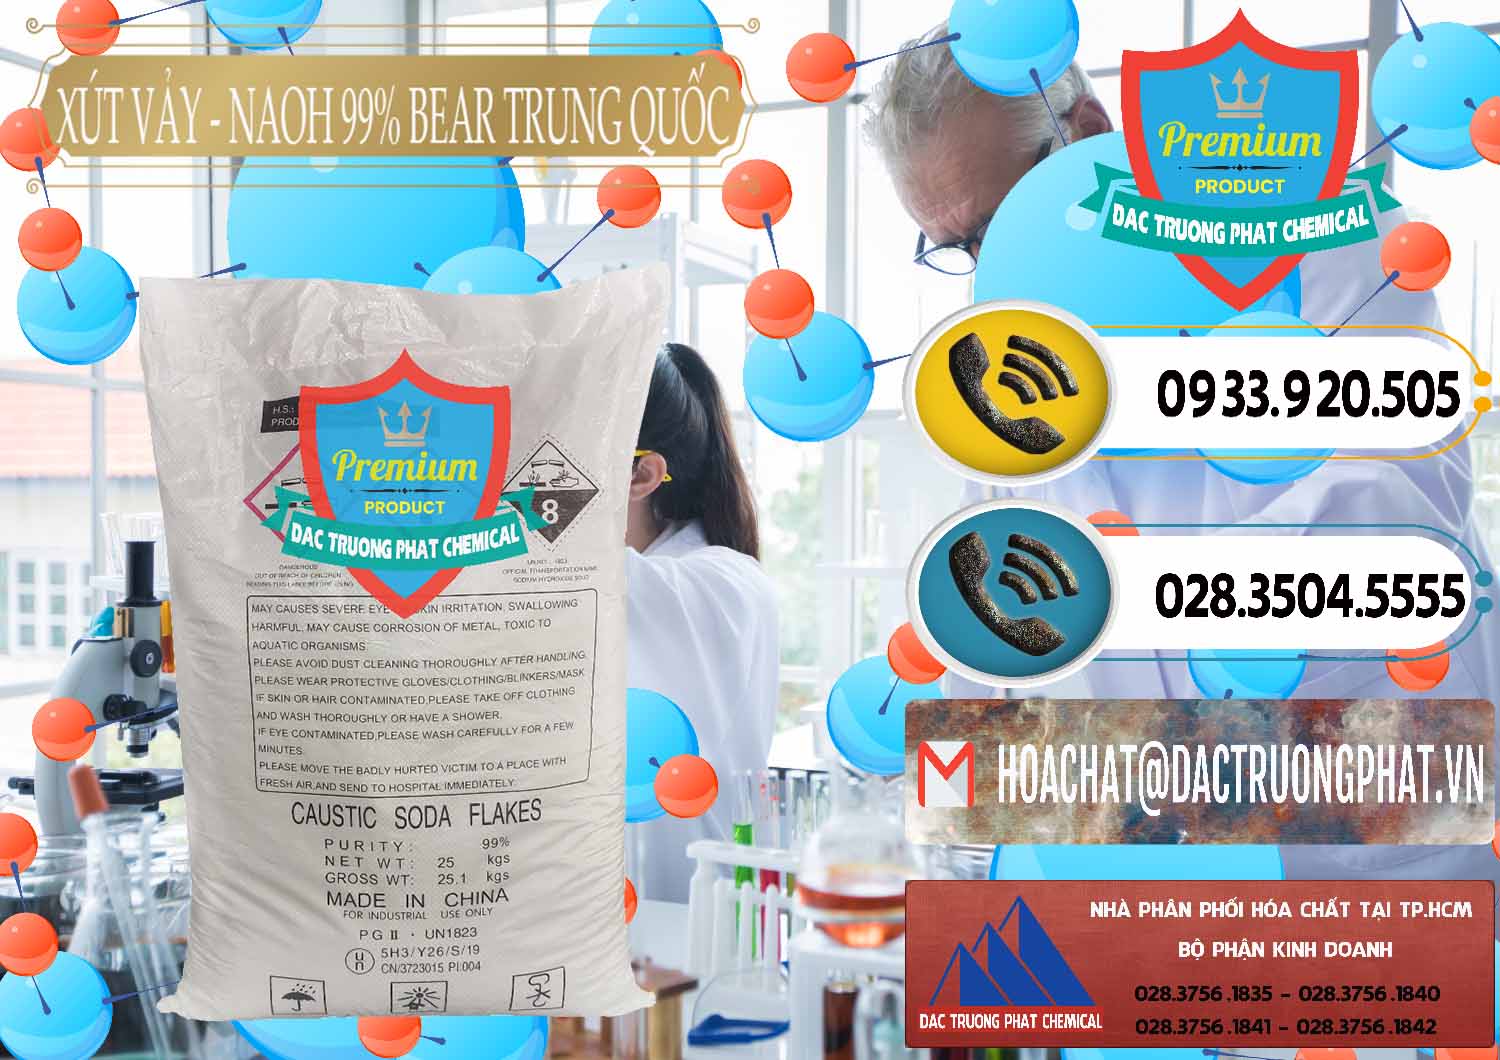 Cung cấp & bán Xút Vảy - NaOH Vảy 99% Bear Sơn Đông Trung Quốc China - 0175 - Đơn vị bán - cung cấp hóa chất tại TP.HCM - hoachatdetnhuom.vn